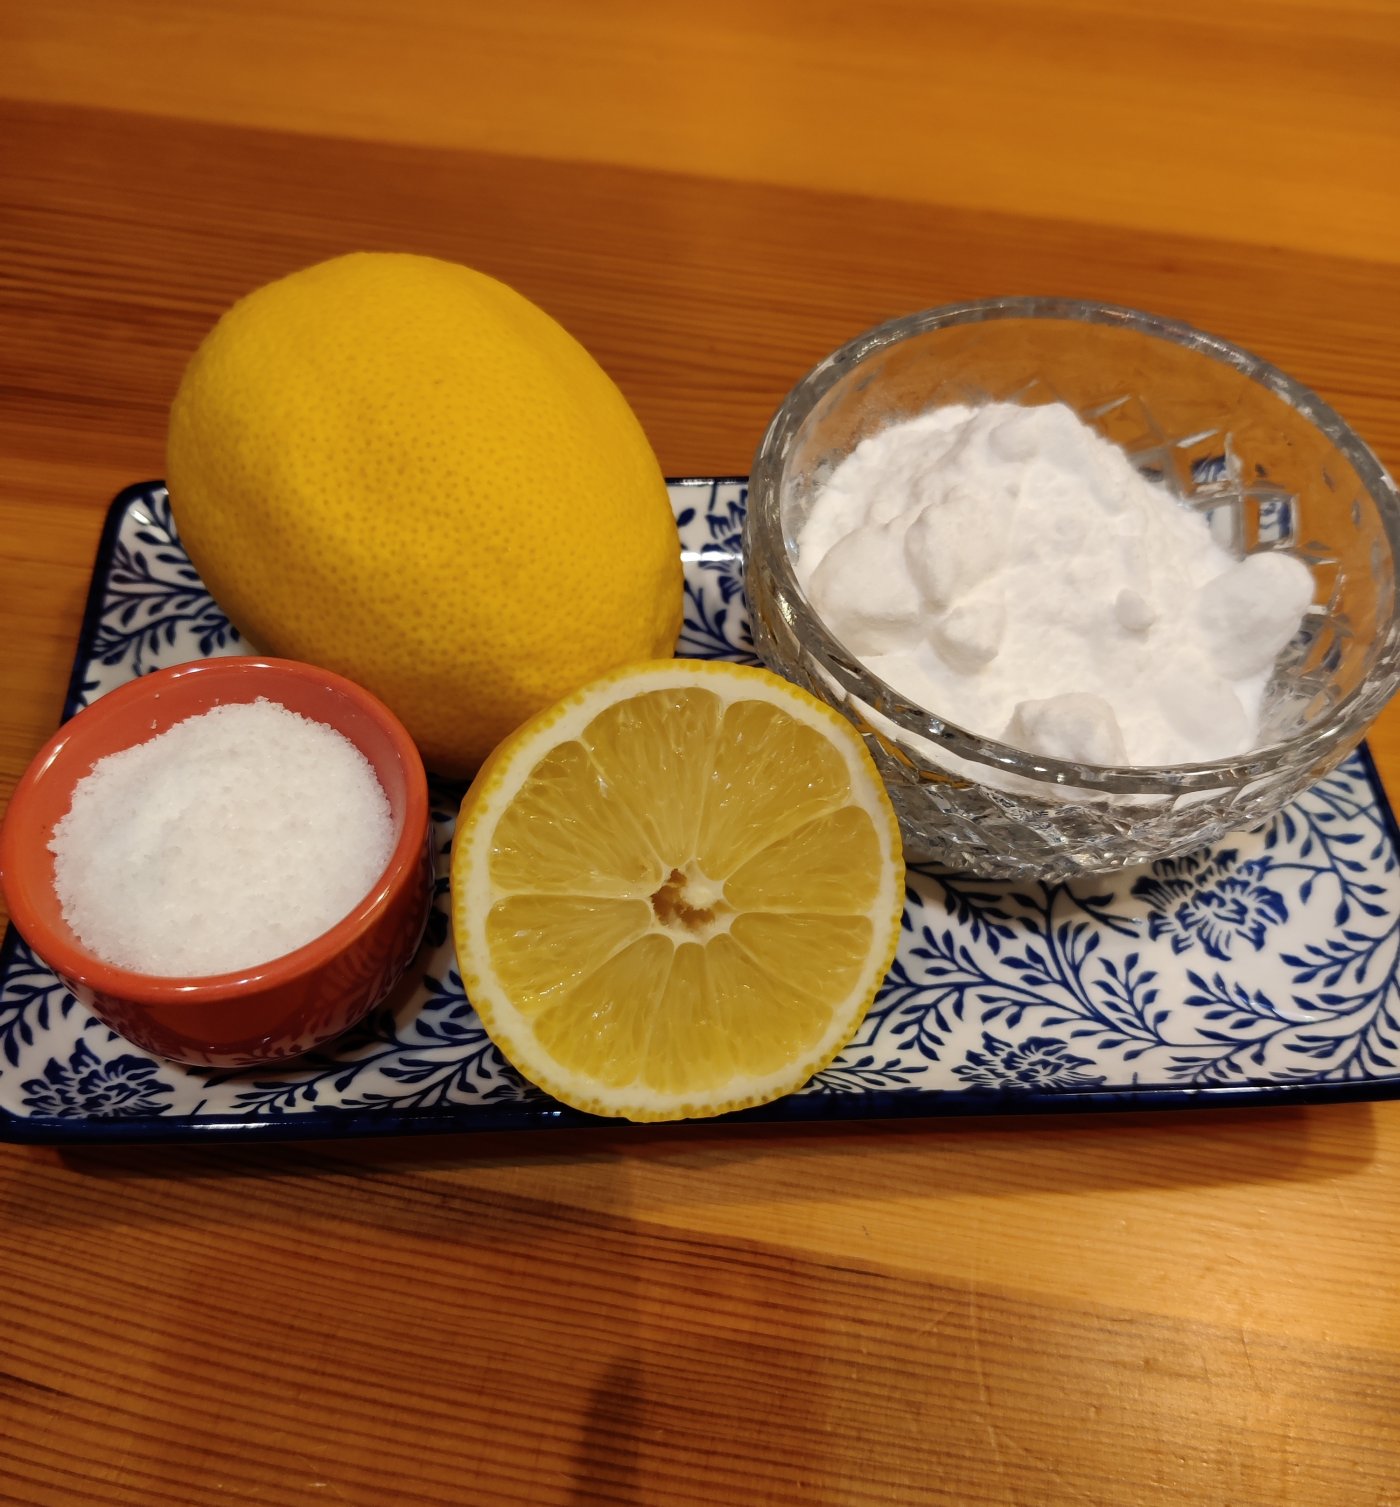 Podstawowe składniki domowych środków czyszczących. Na zdjęciu talerzyk, a na nim miseczka z solą kuchenną, miseczka z sodą oczyszczoną oraz cytryna. (fot. Anna Bubel)